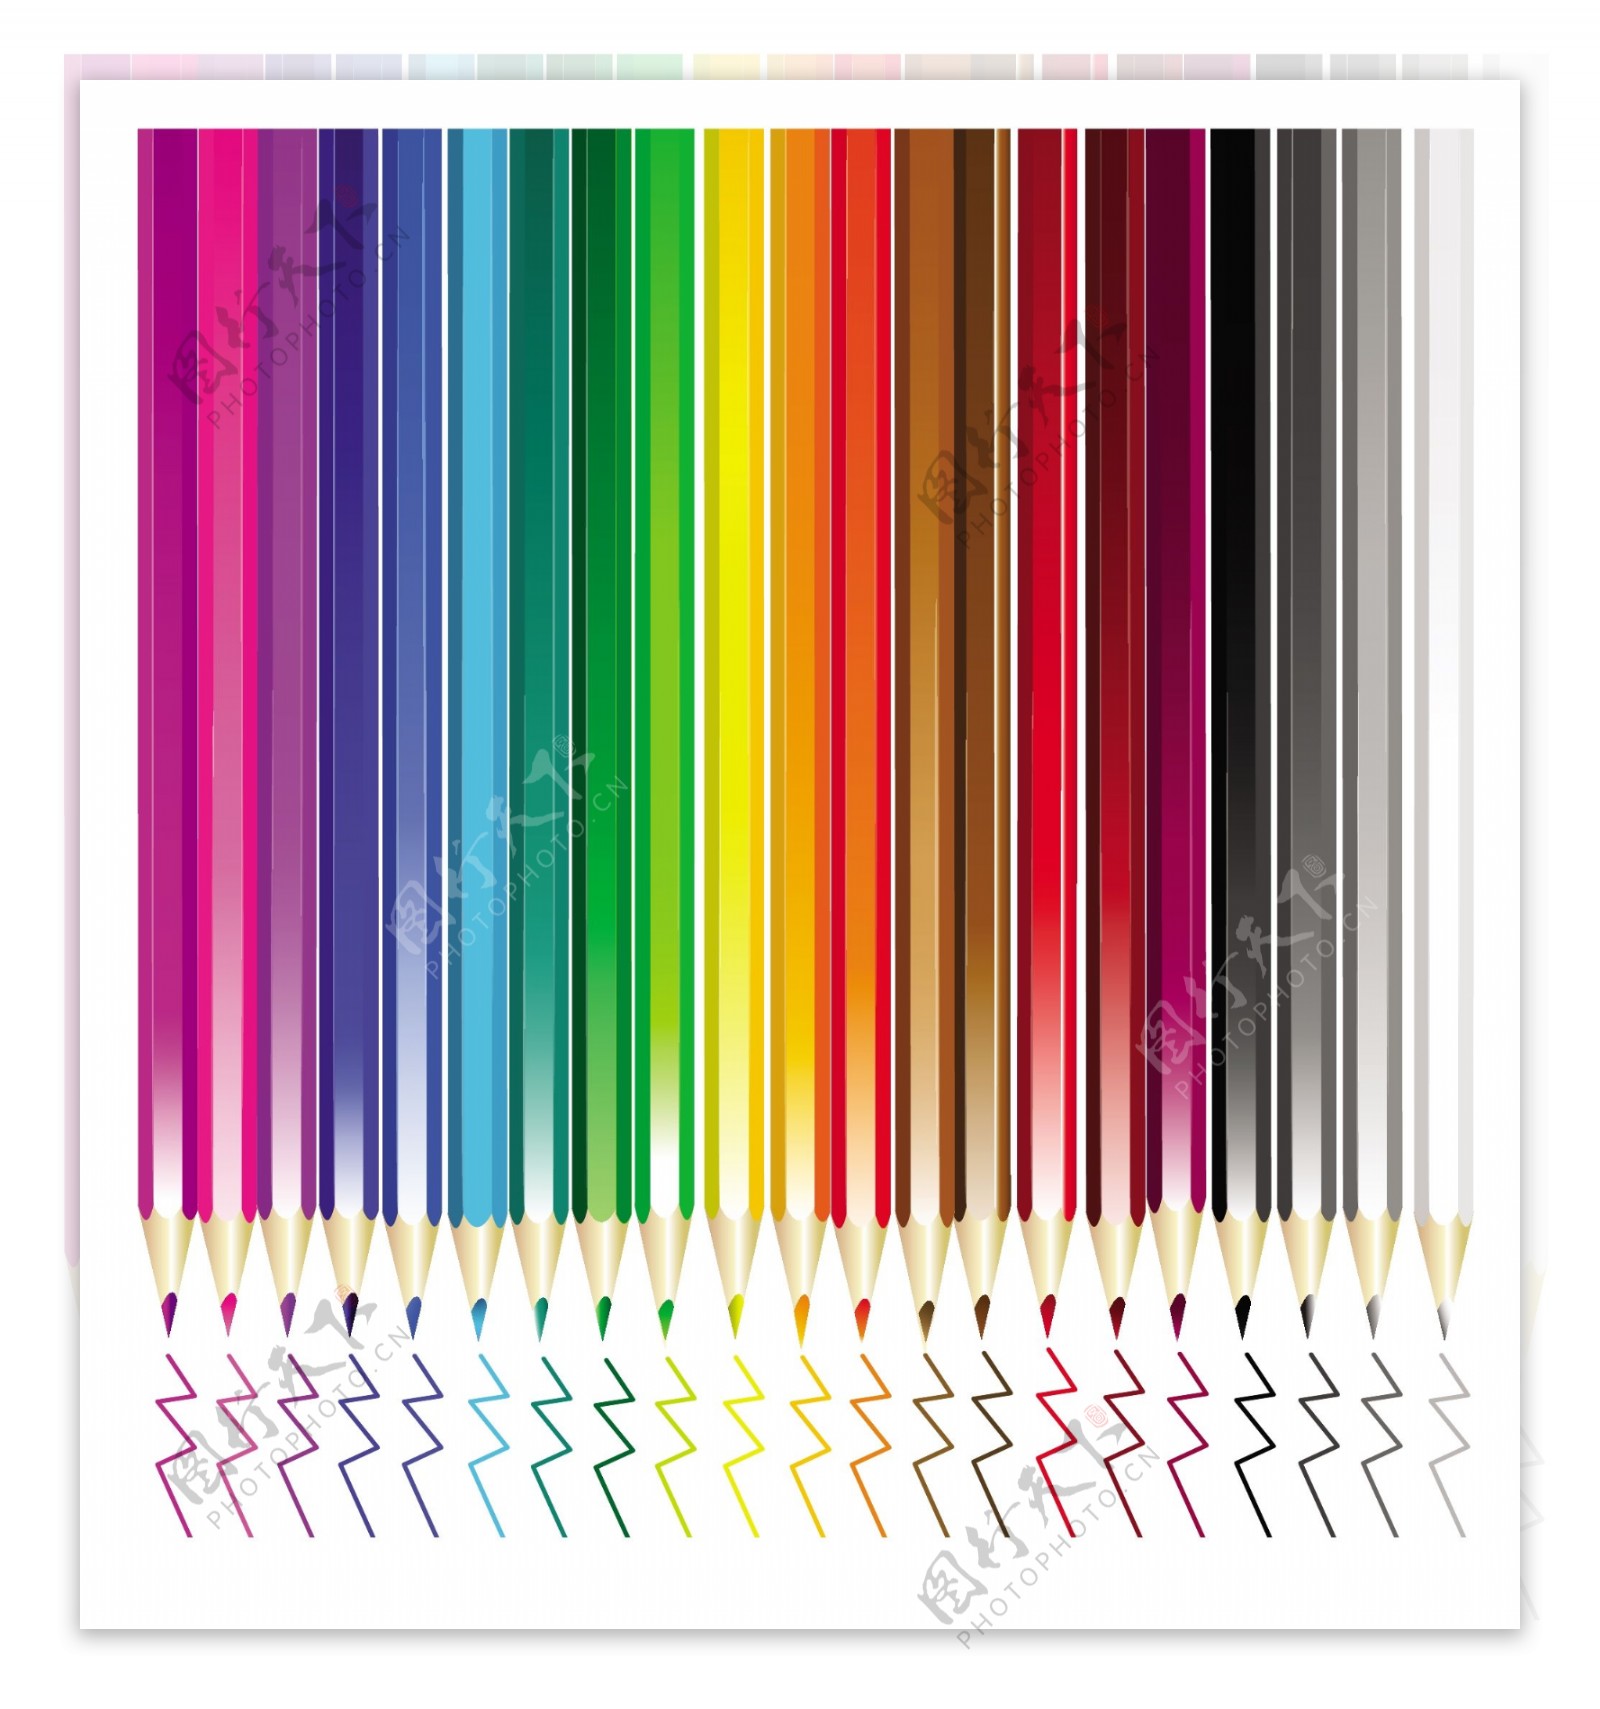 彩色铅笔矢量素材